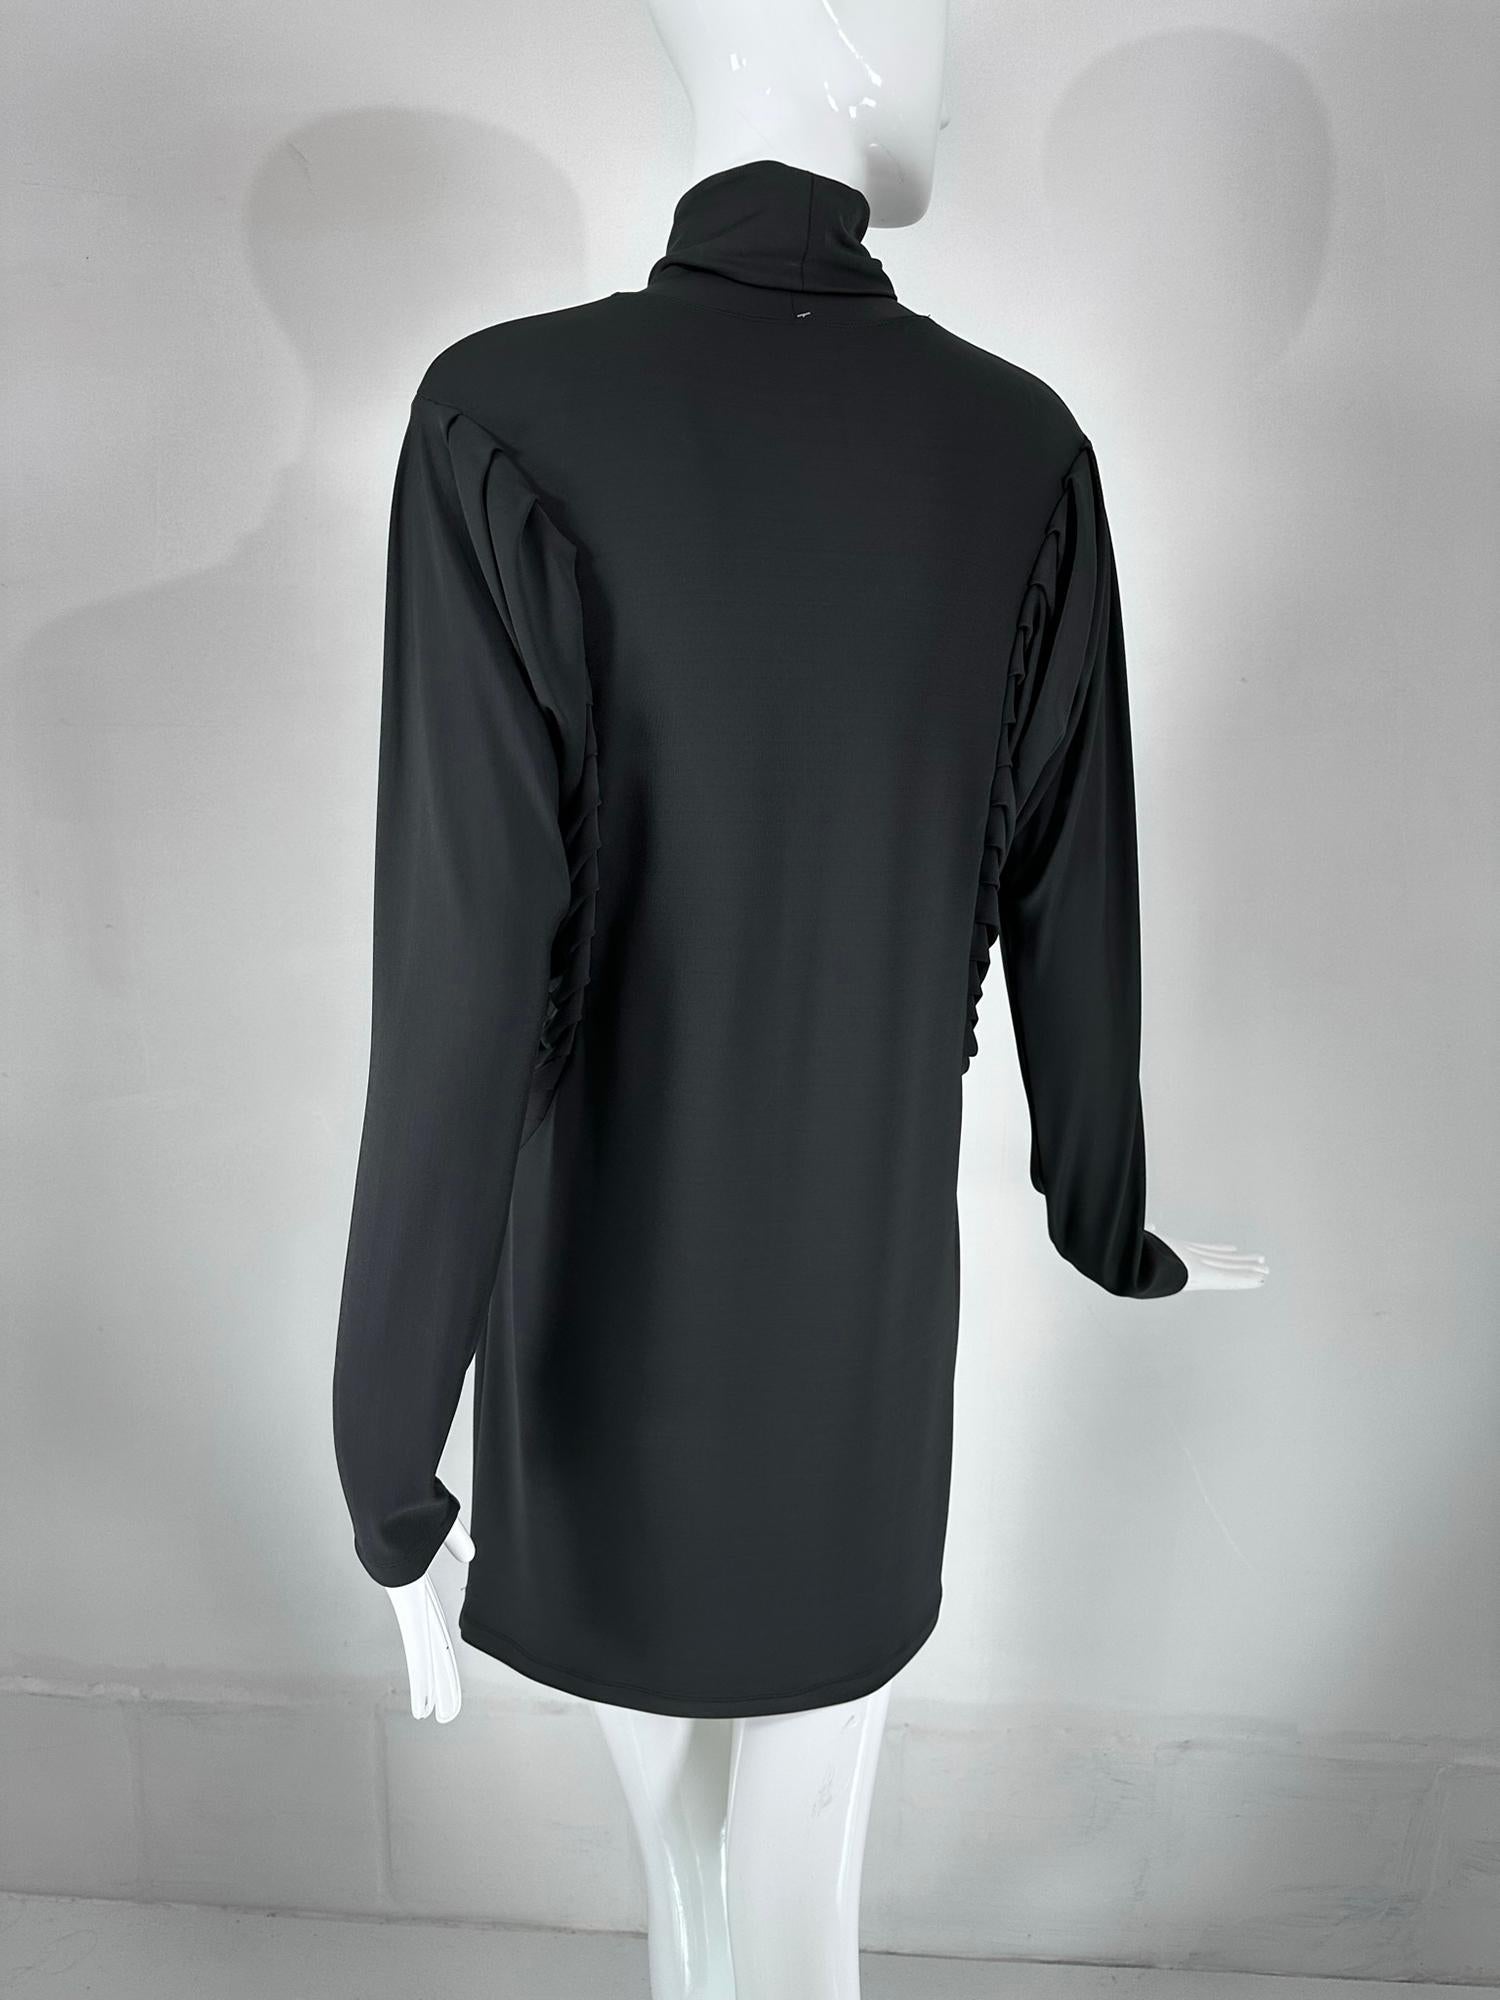 Fendi Silky Black Jersey Pleated Bat Wing Turtle Neck Dress 40 For Sale 6